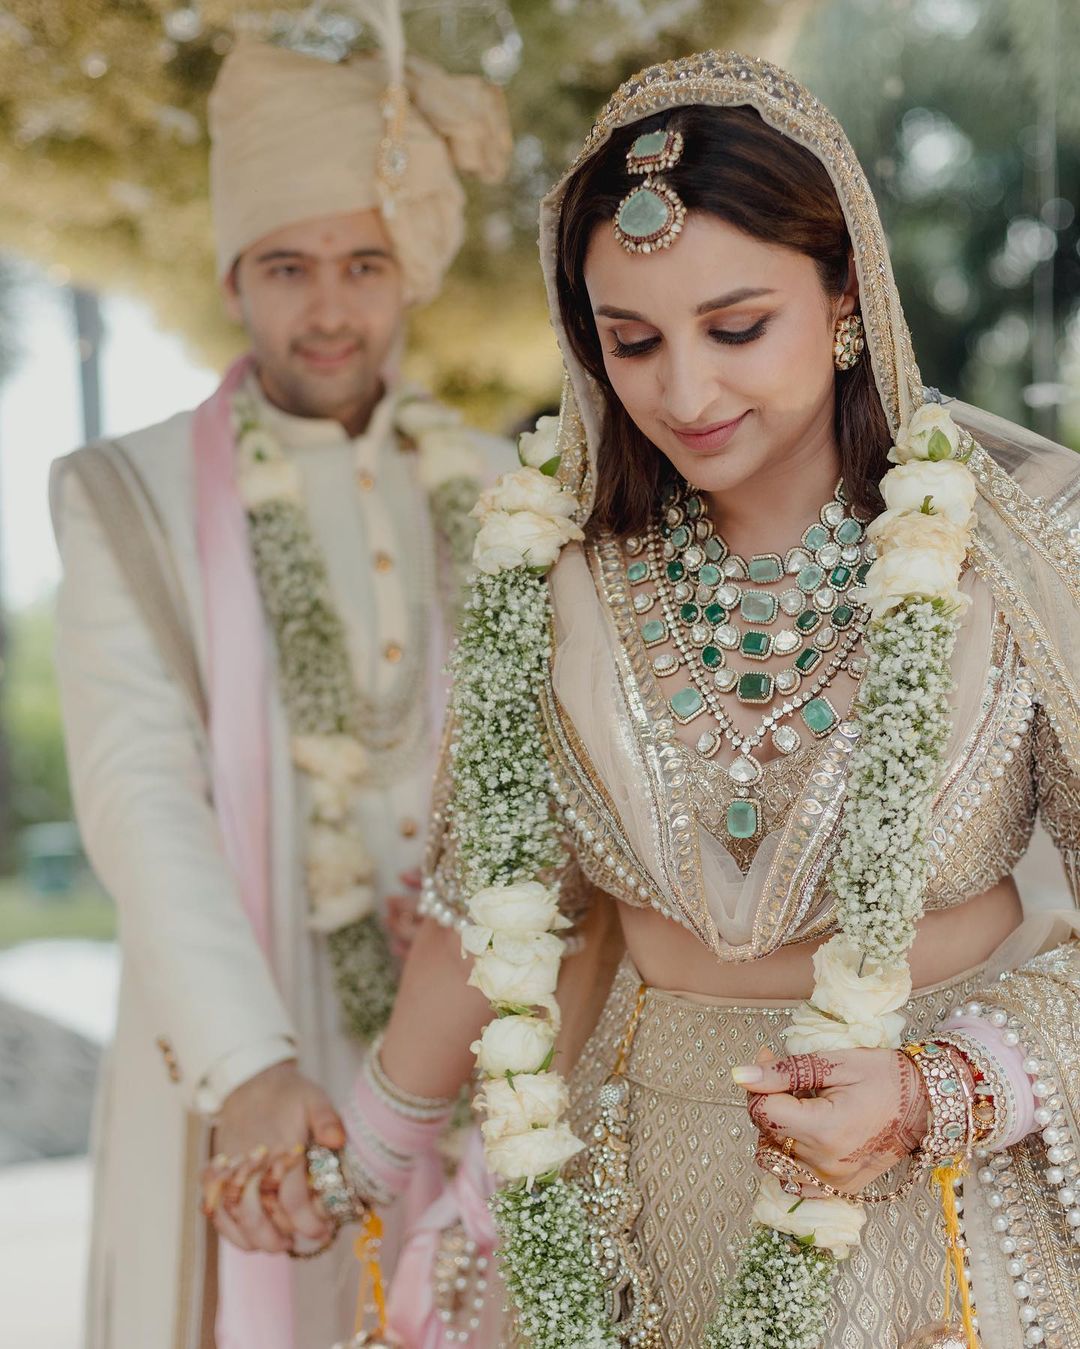 शादी में Parineeti Chopra ने पहना Manish Malhotra का डिजाइनर लहंगा, Veil पर लिखा था Raghav का नाम, चूड़ा और कलीरे भी थे कस्टमाइज!